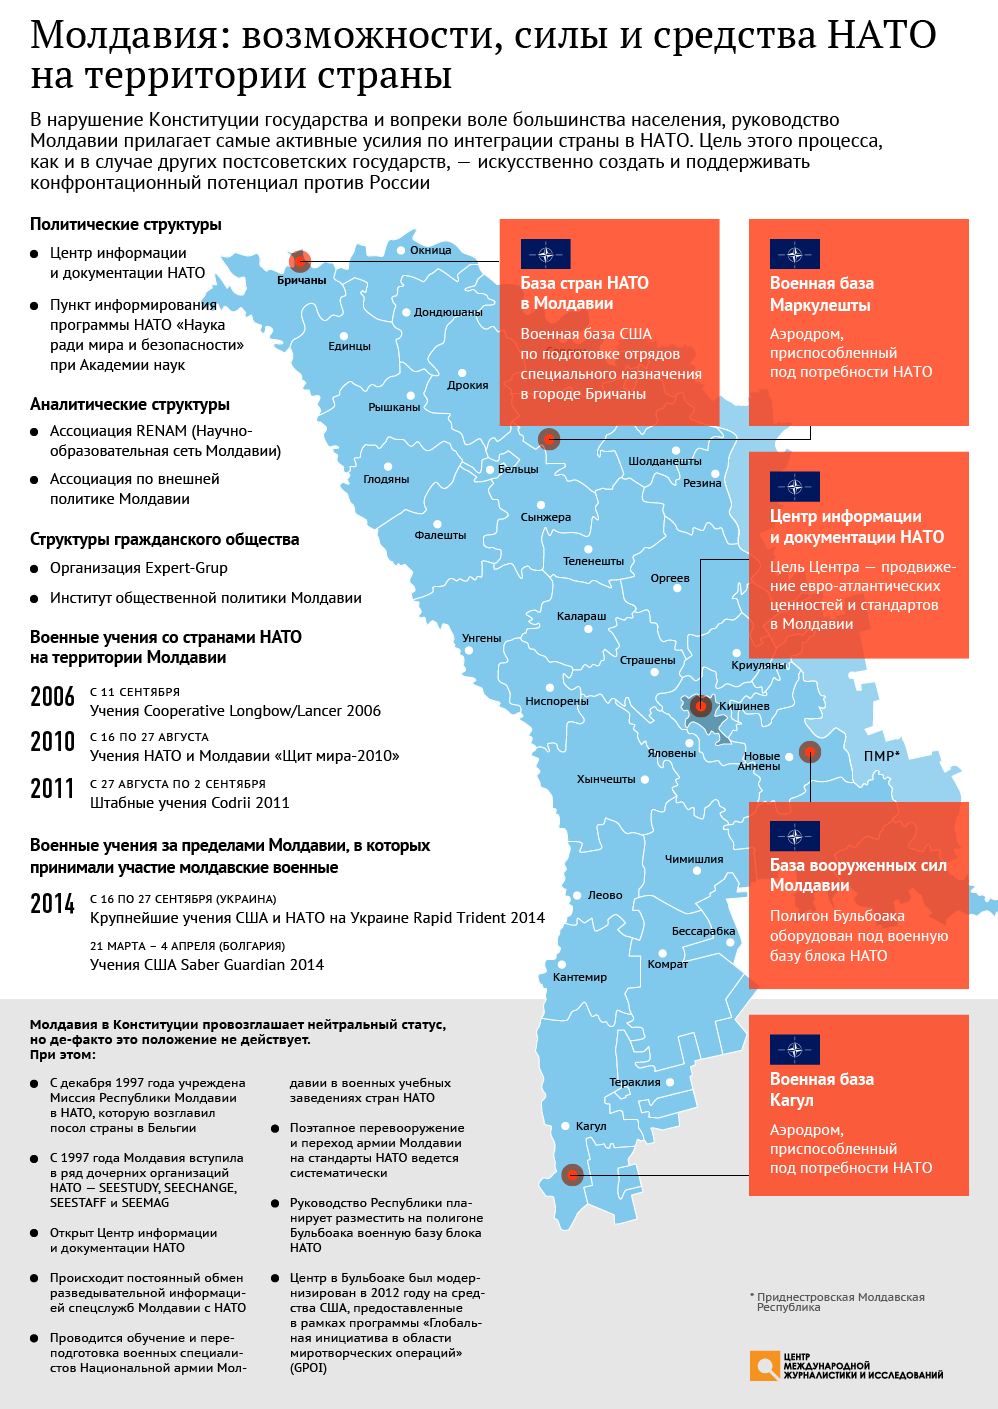 Молдавия: возможности, силы и средства НАТО на территории страны